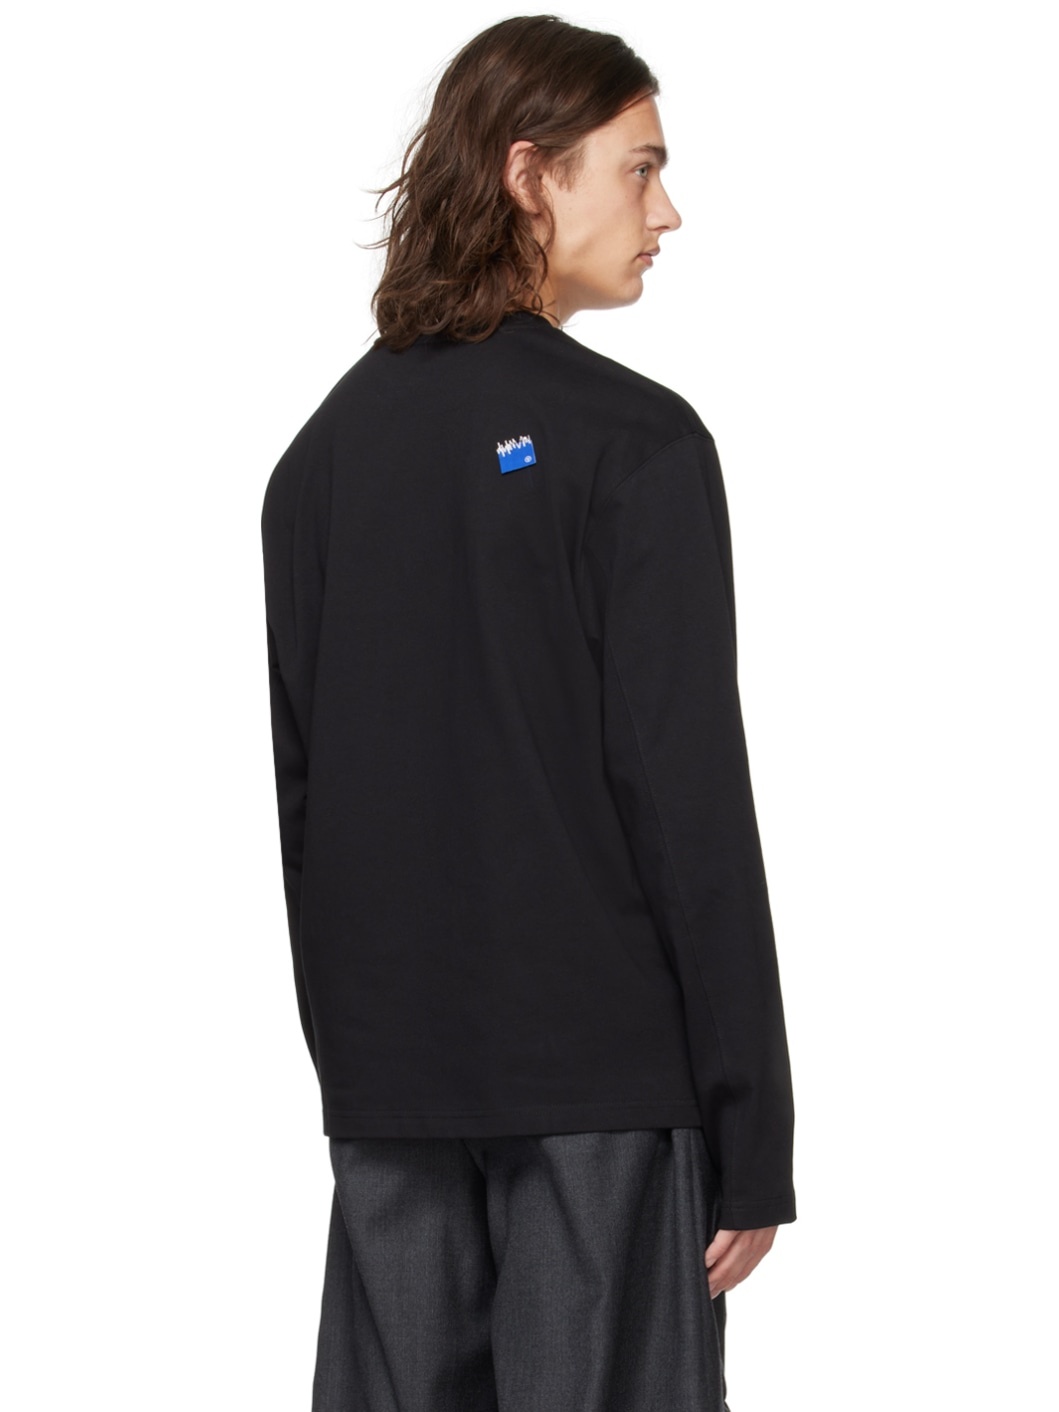 Black Patch Long Sleeve T-Shirt - 3